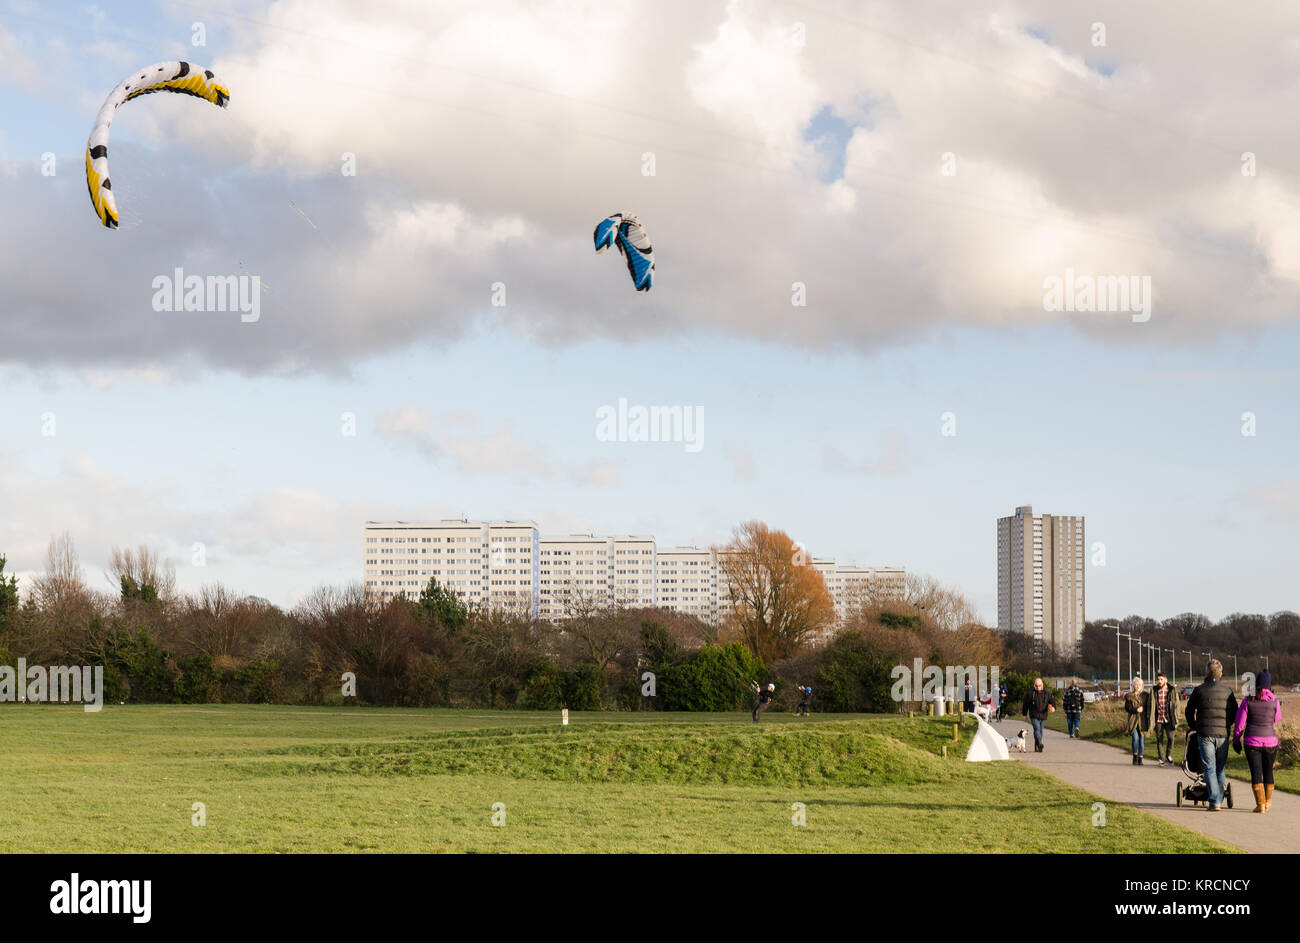 Southampton, England, UK - 16. Februar 2014: die Menschen in Kite kitelandboarding an einem sonnigen Tag an einem Park an der Weston Ufer neben dem Rat esta Stockfoto